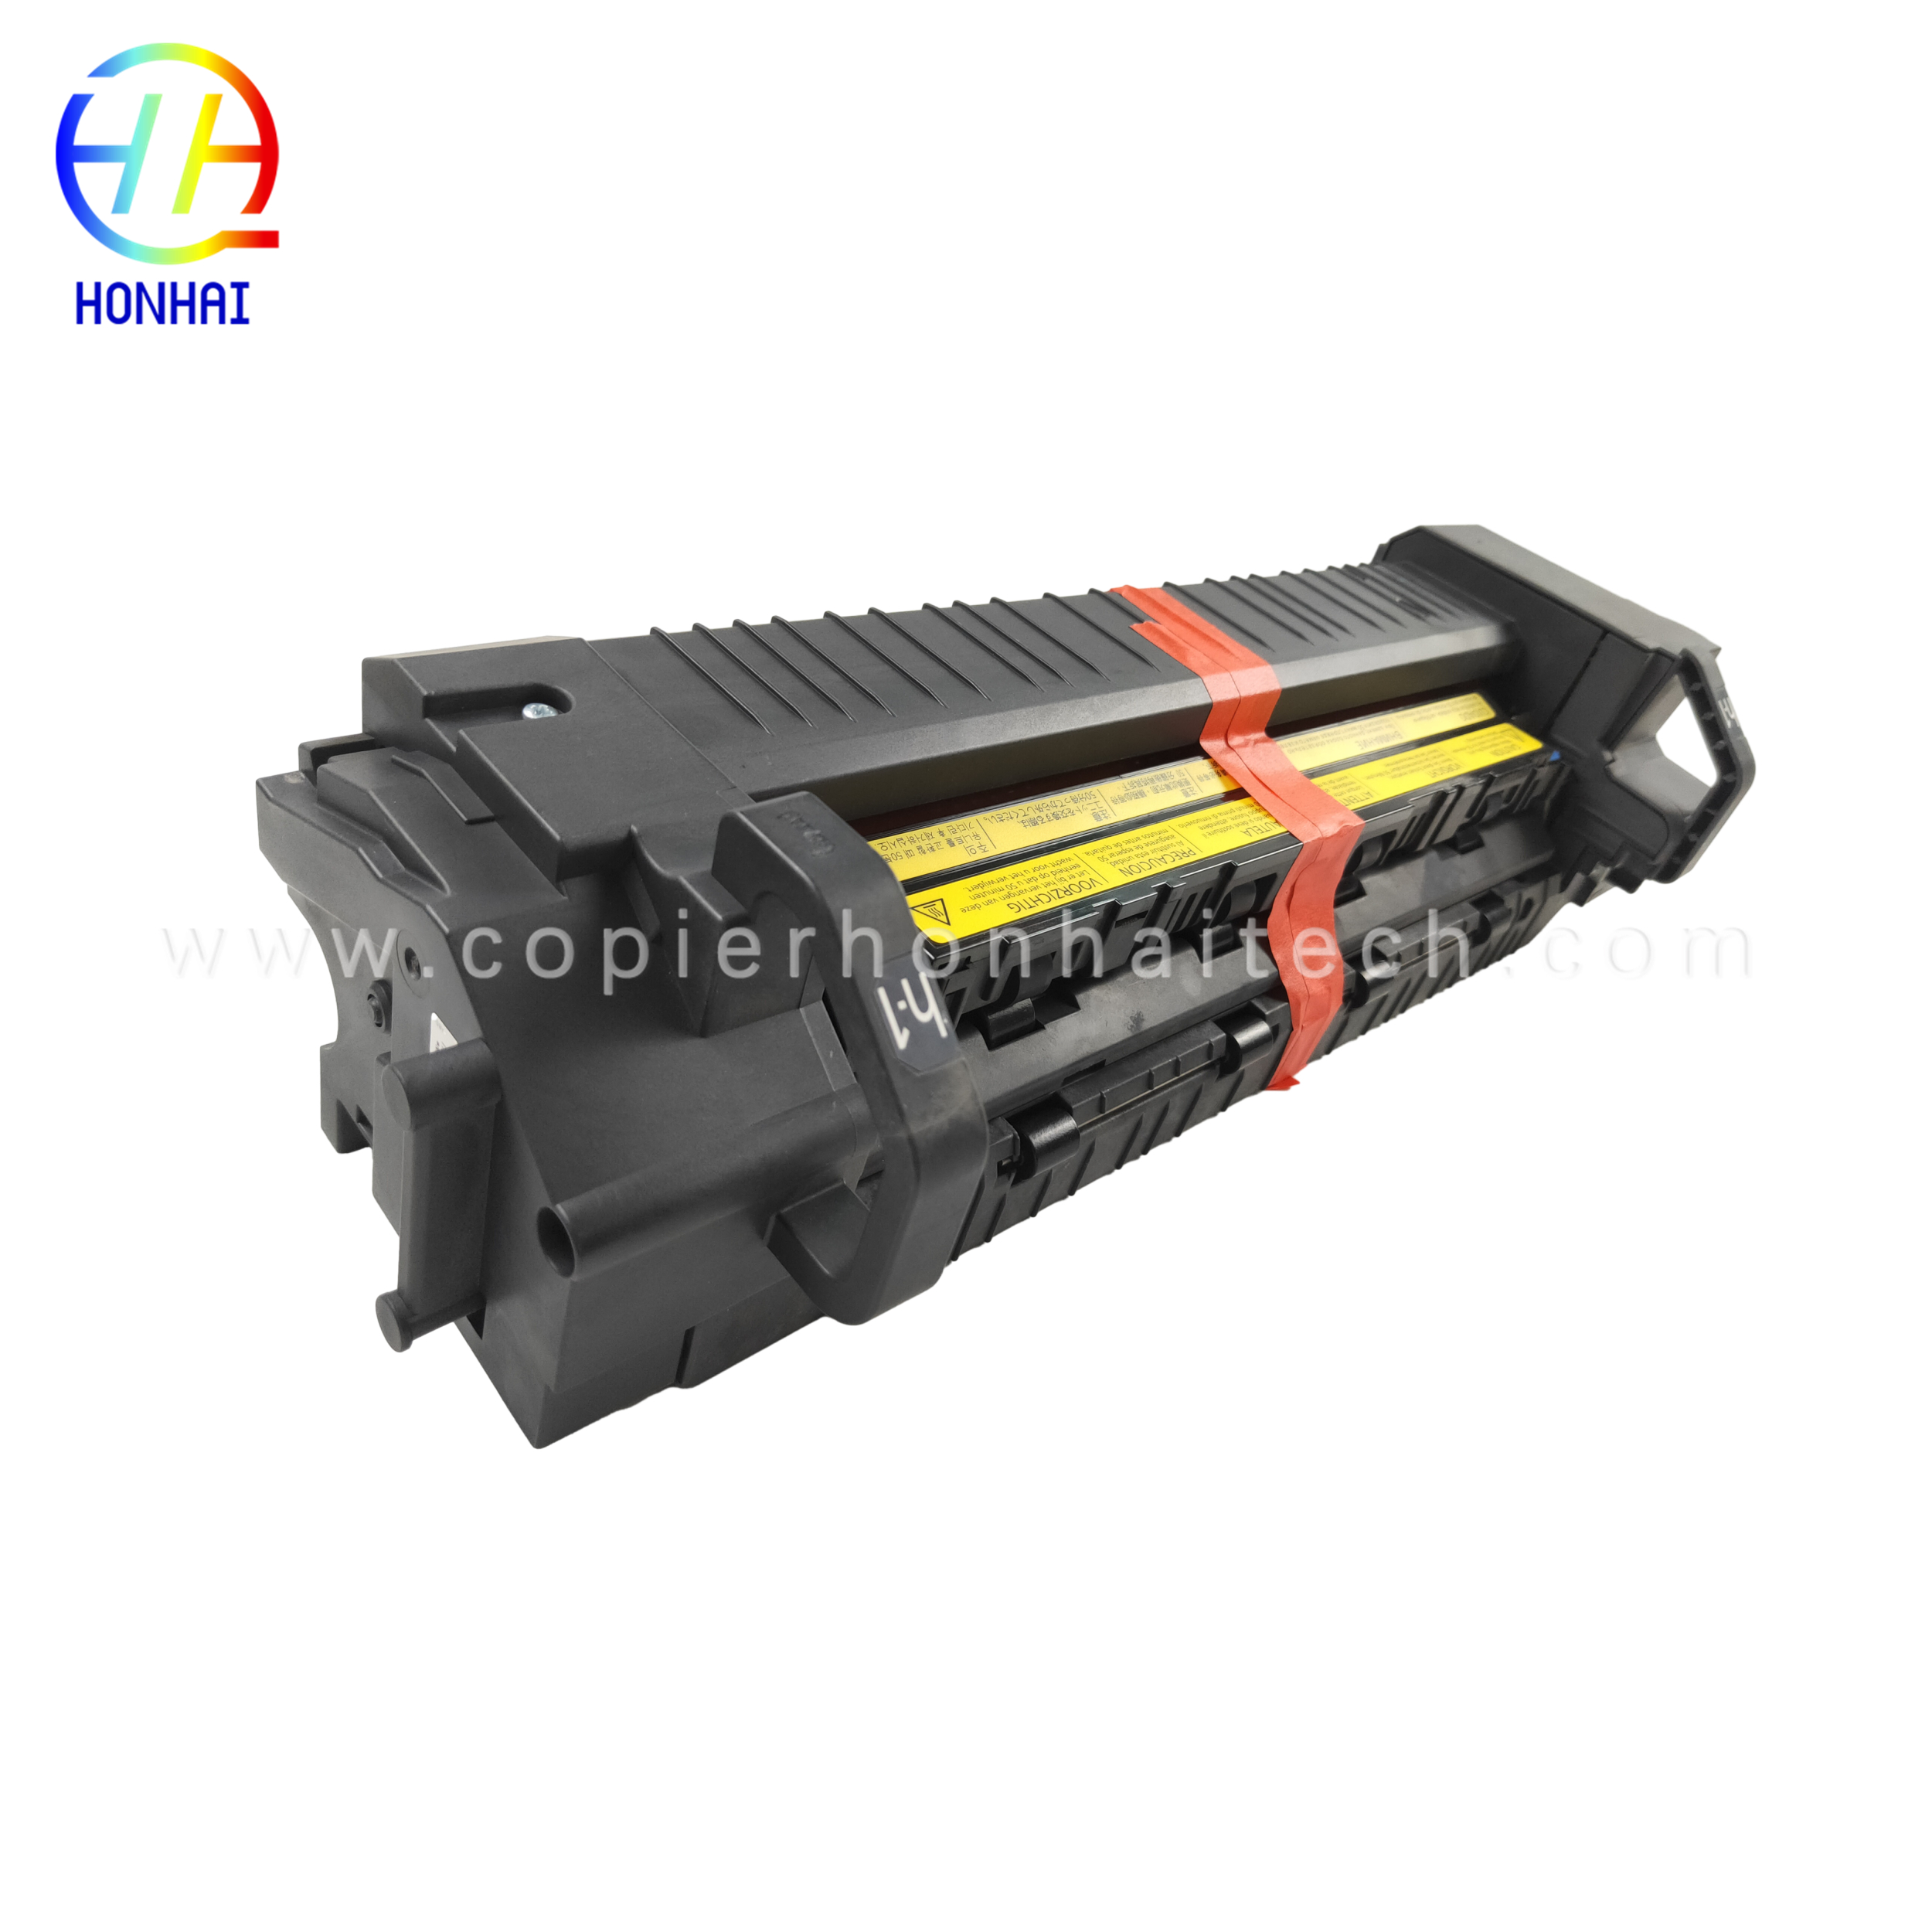 https://www.copierhonhaitech.com/fuser-unit-220v-for-kyocera-taskalfa-2551-302np93080-fk-8325-fuser-kit-product/